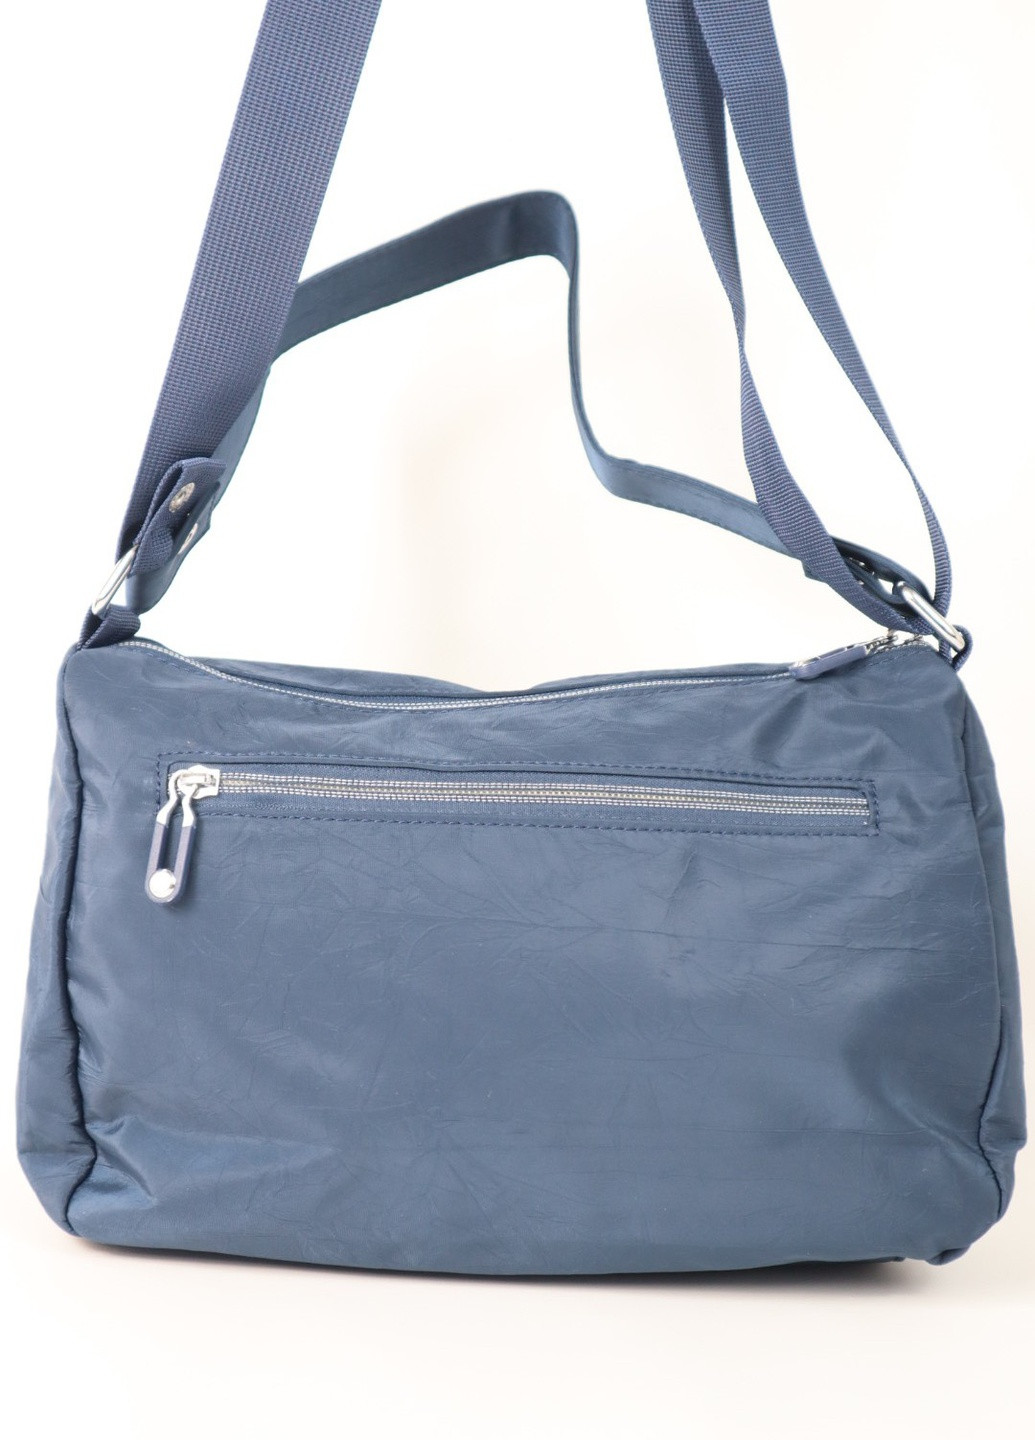 Сумка / Сумка женская / Женская текстильная сумка / MAGICBAG однотонная синяя спортивная